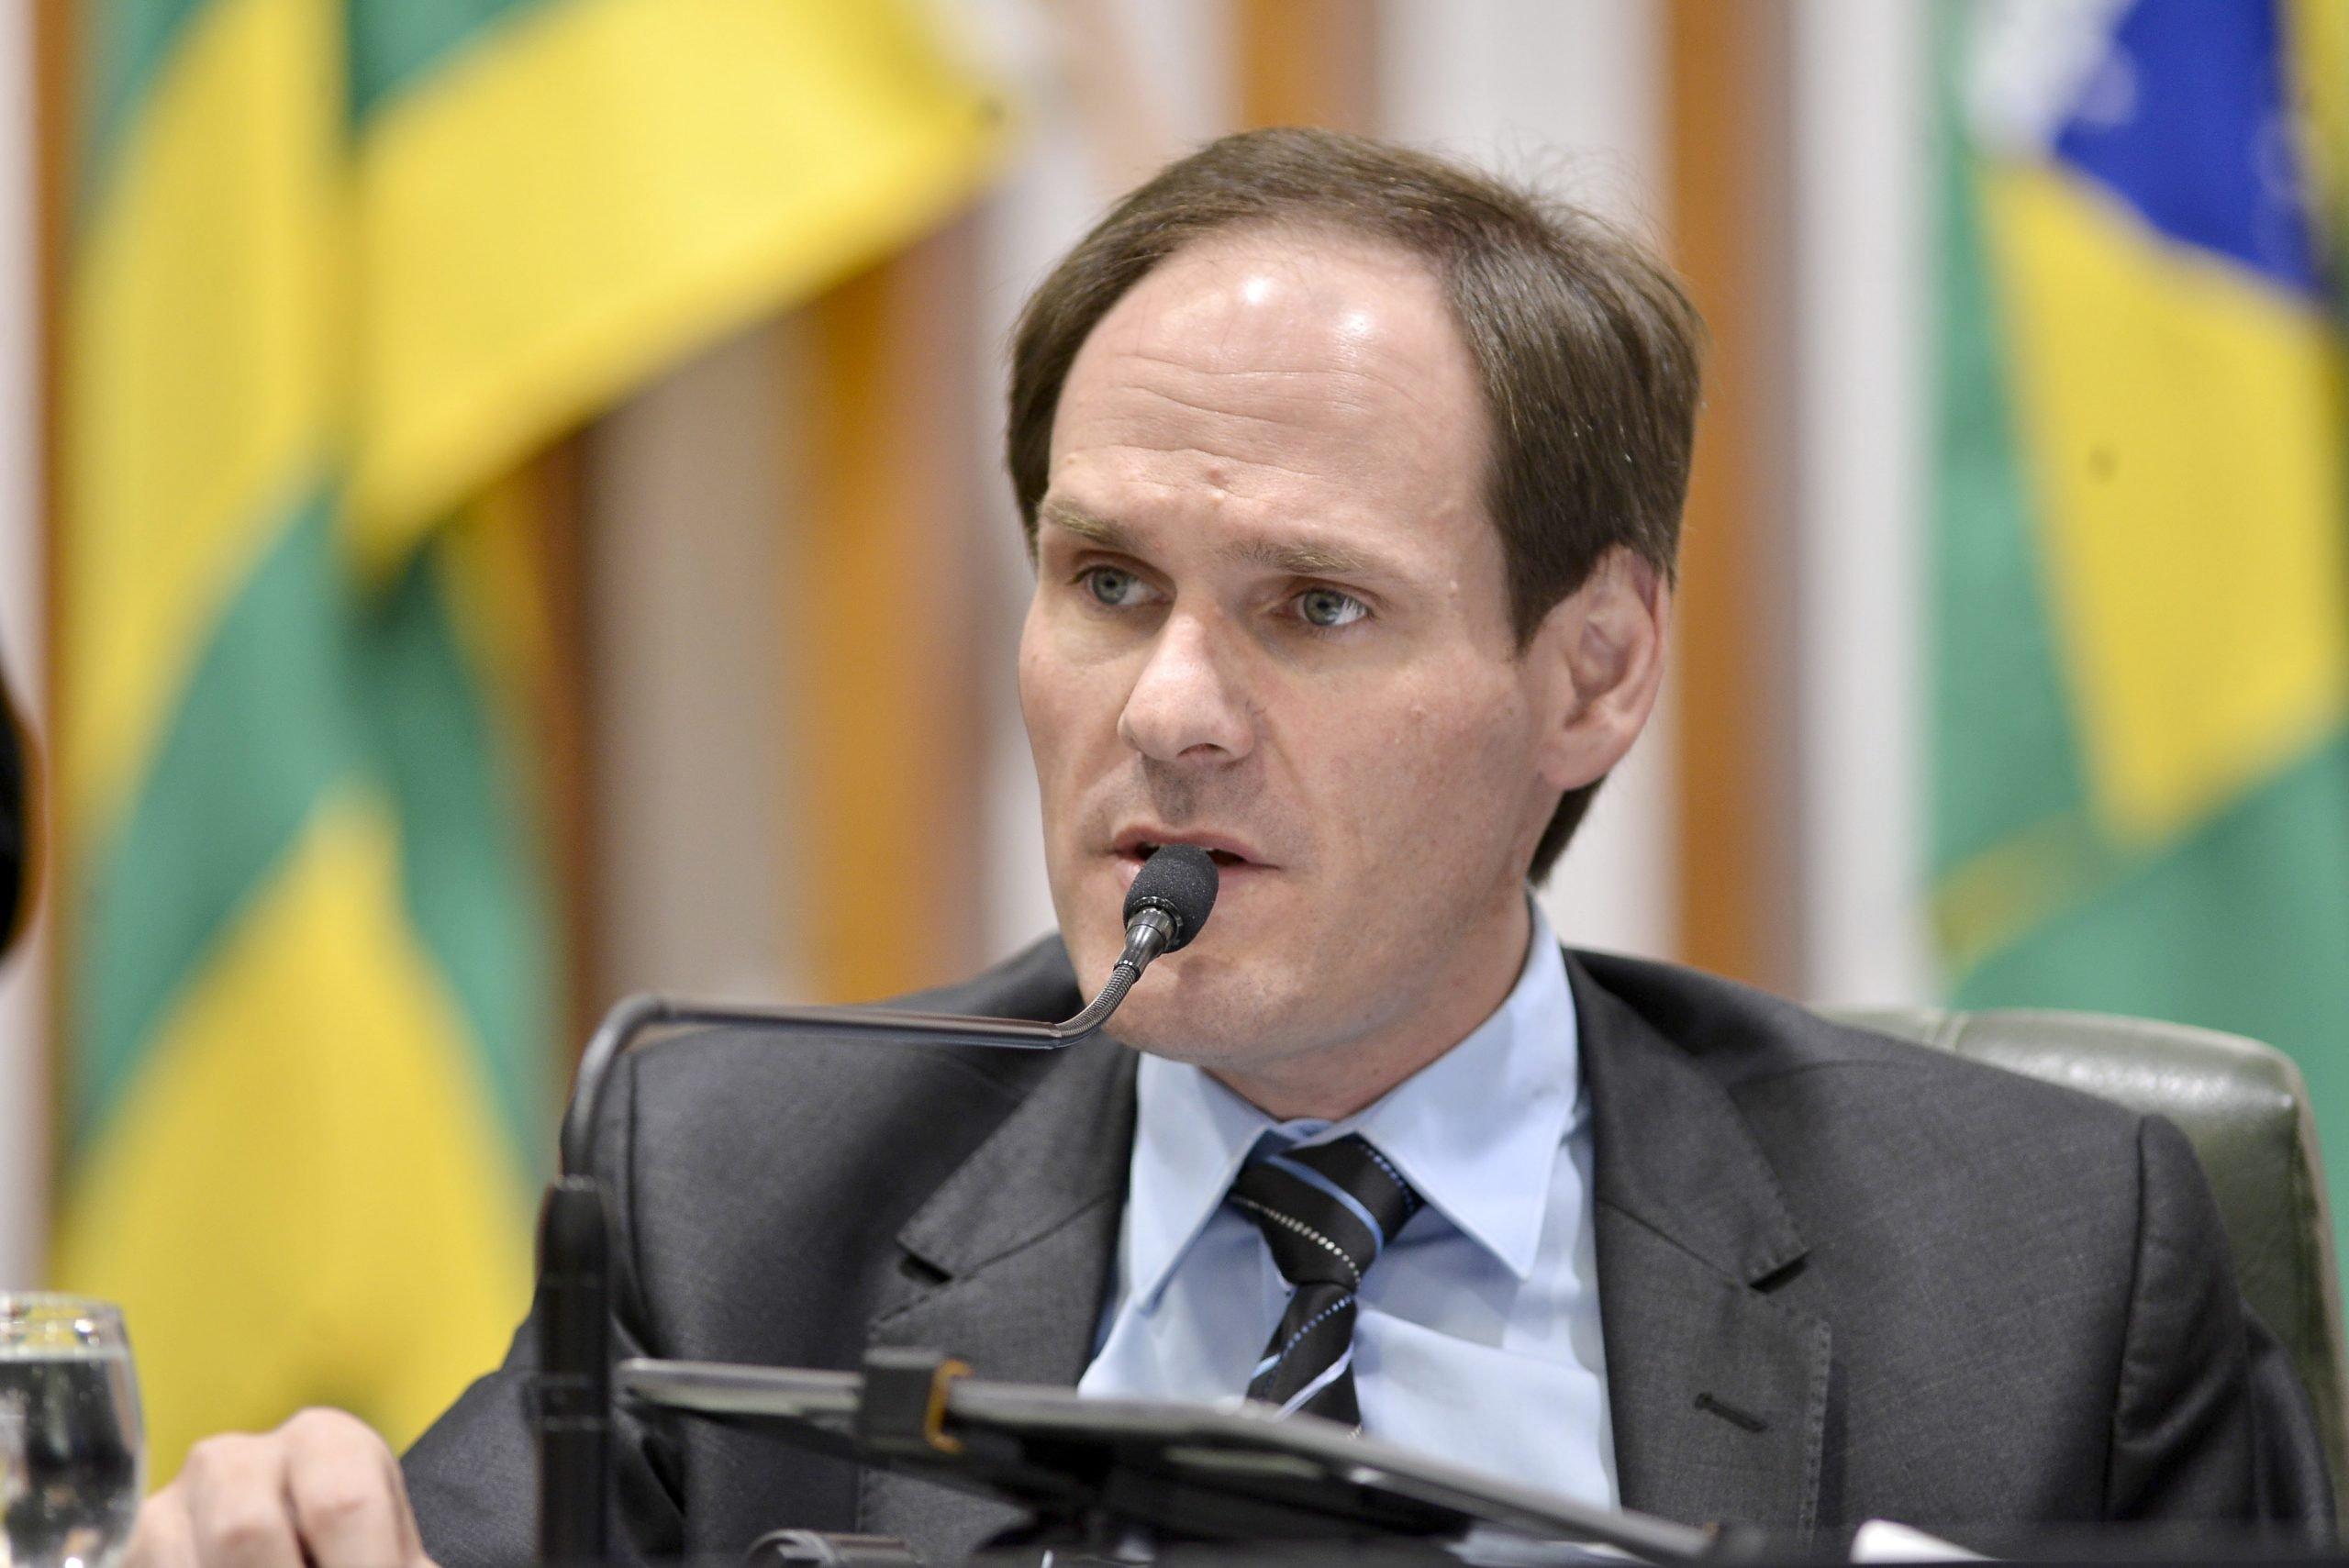 Lissauer Vieira, candidato a senador de Goiás pelo PSD. Ele é branco, tem cabelo curto, liso e loiro e discursa em microfone da Assembleia Legislativa de Goiás - Metrópoles